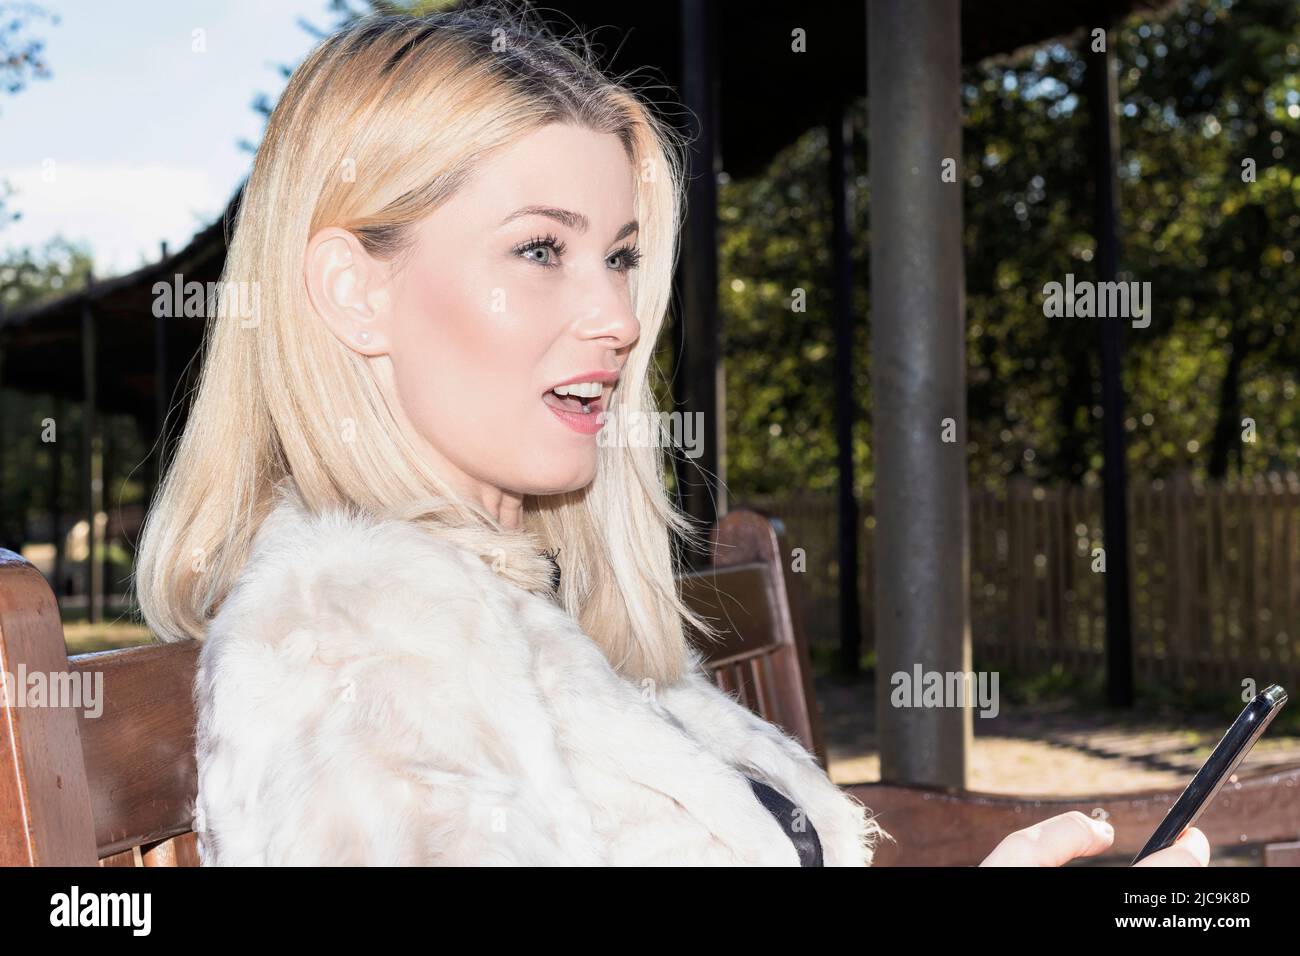 femme blonde assise dans un parc avec un mobile Banque D'Images